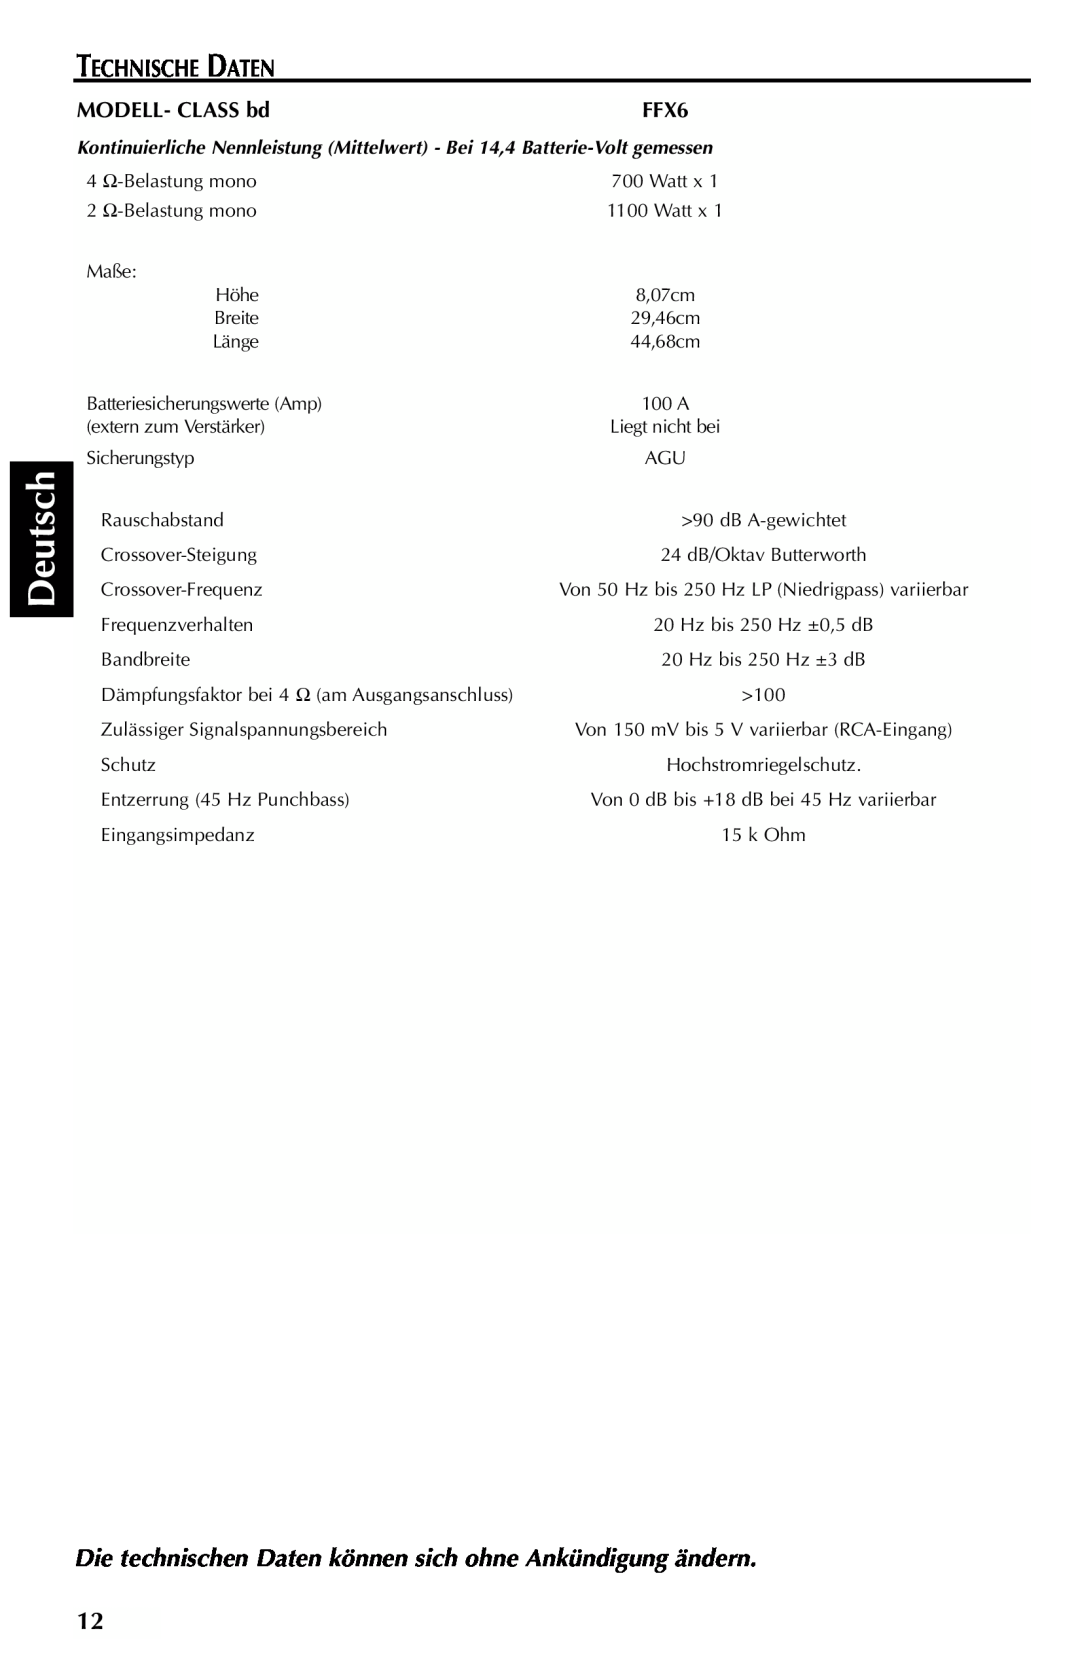 Rockford Fosgate FFX6 manual Deutsch, Technische Daten, MODELL- CLASS bd 